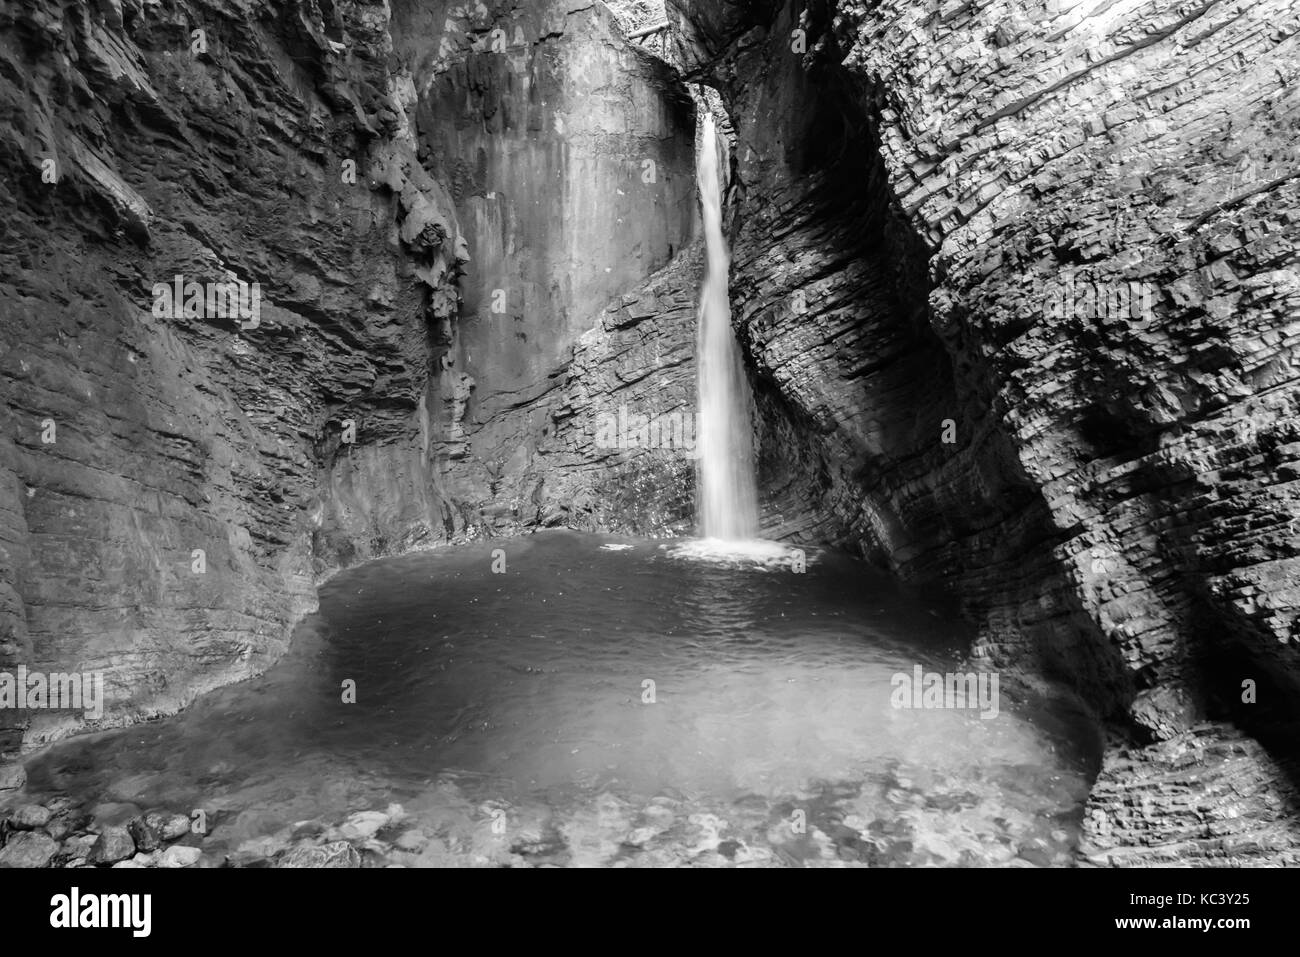 Cascades et jeux d'eau dans les Alpes juliennes. noir et blanc. Banque D'Images